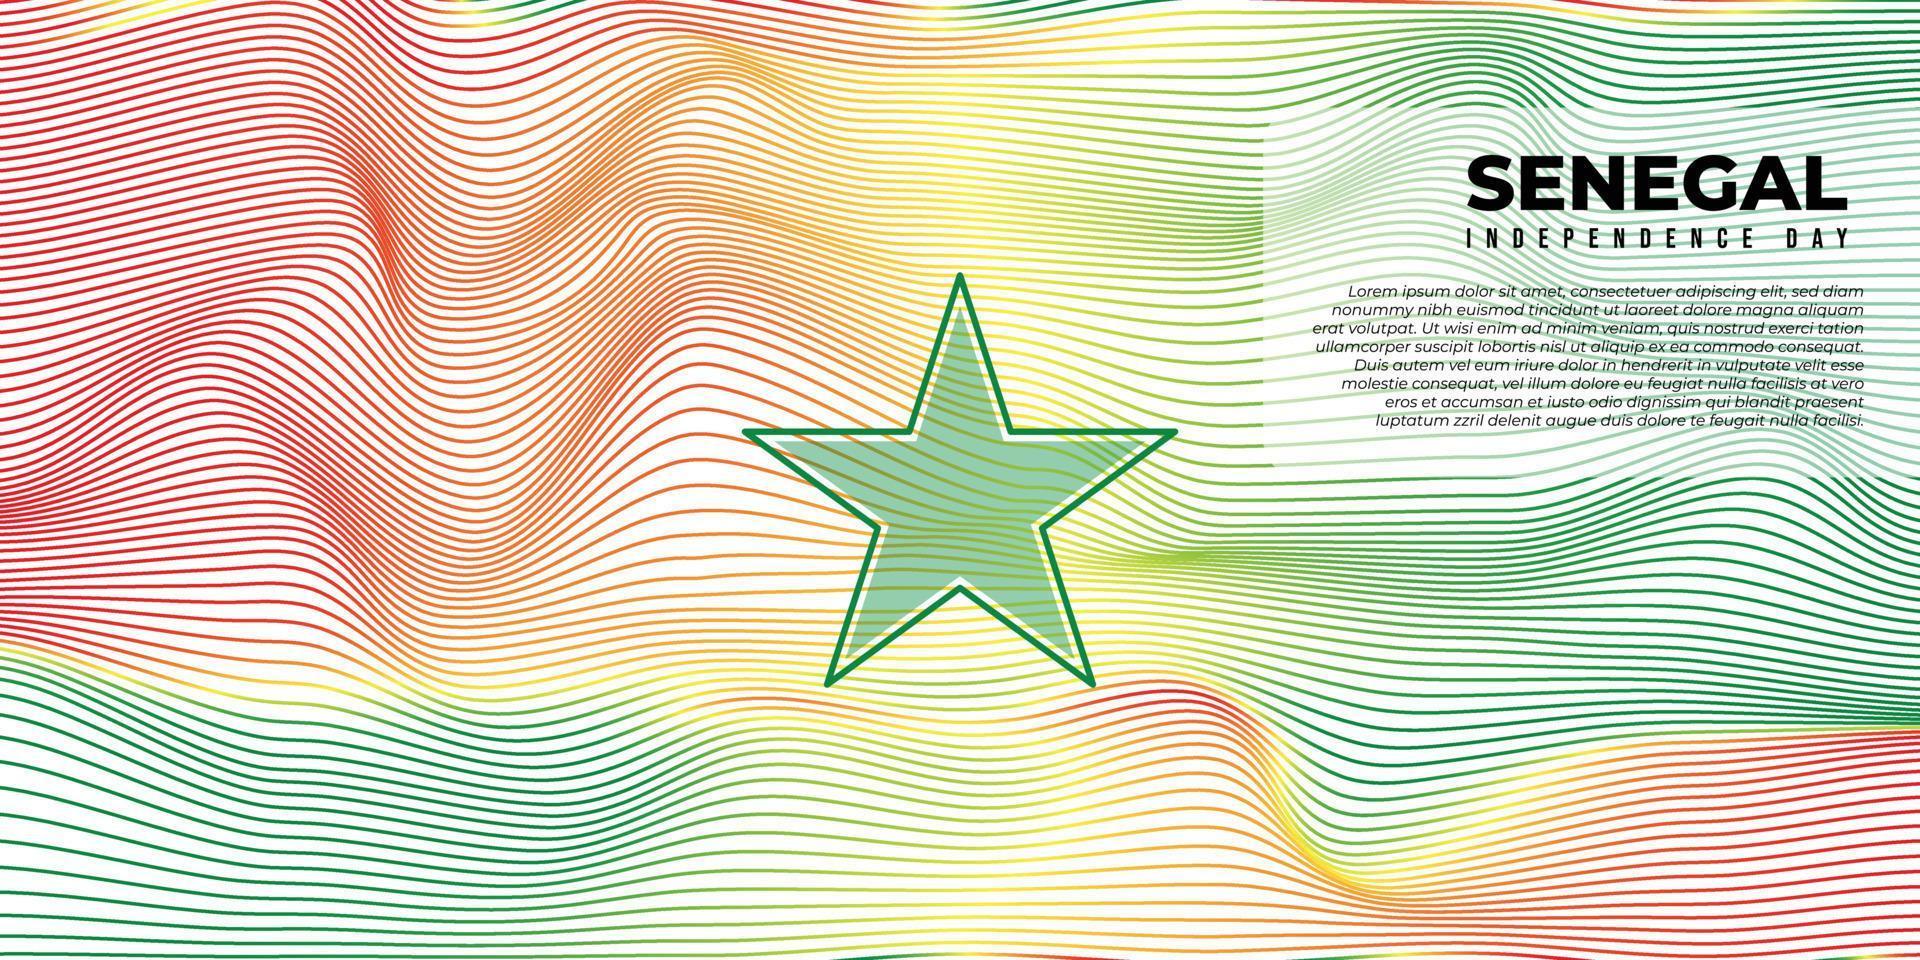 achtergrond met rood geel en groen ontwerp. Senegal onafhankelijkheidsdag achtergrond met groen sterontwerp. vector